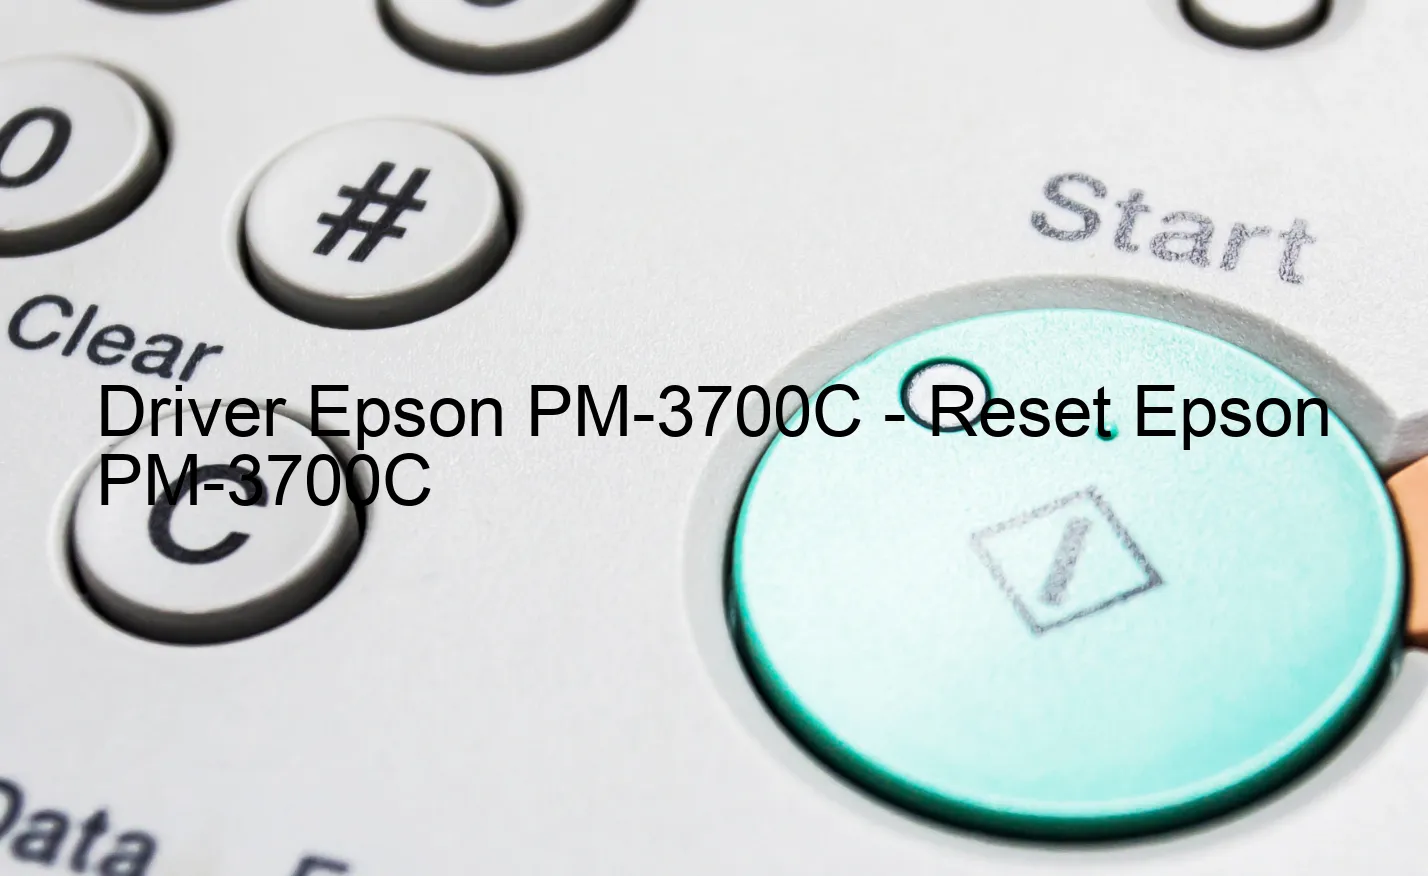 Epson PM-3700Cのドライバー、Epson PM-3700Cのリセットソフトウェア